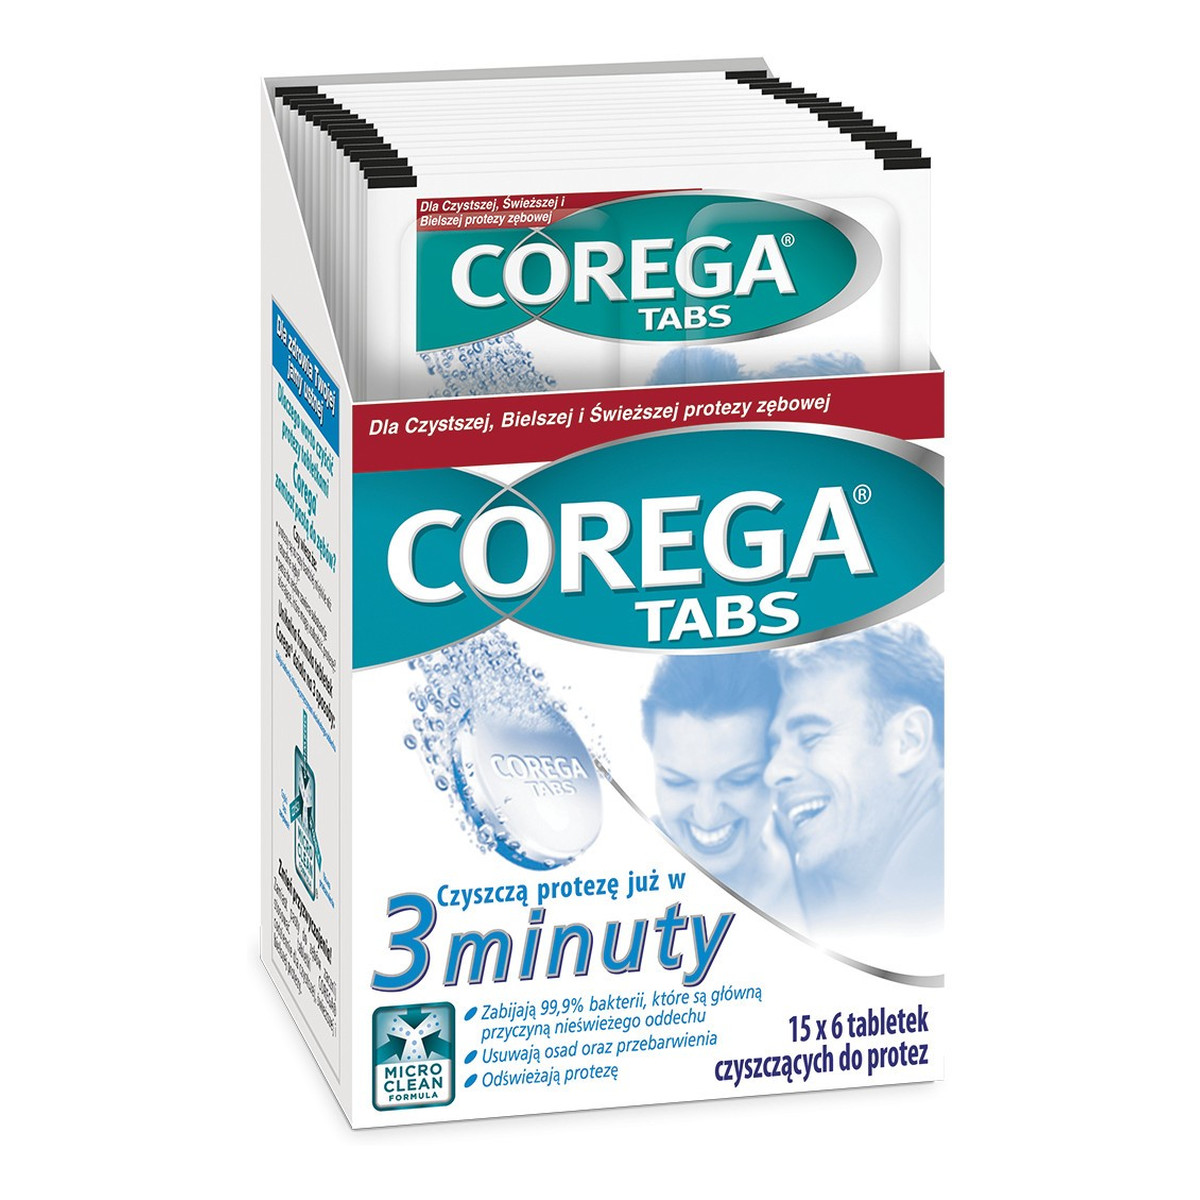 Corega Tabs Tabletki czyszczące do protez zębowych 6 sztuk